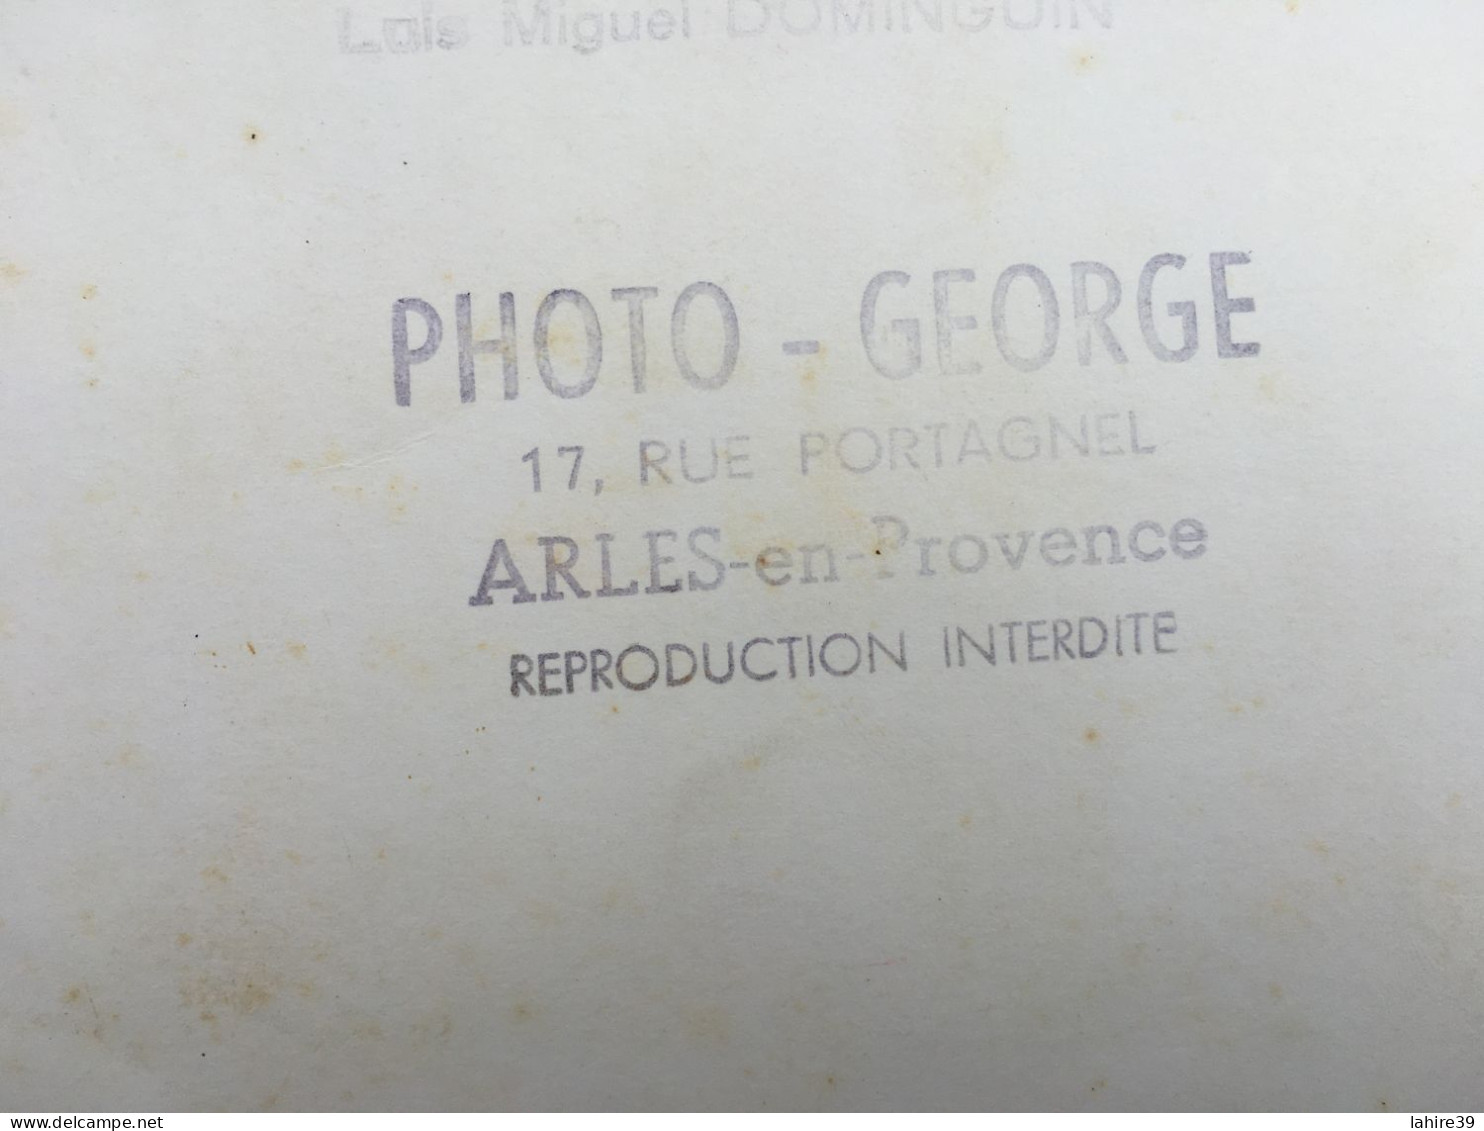 Photo de corrida (mauvais état) / Photo - George / Arles en Provence / Tauromachie